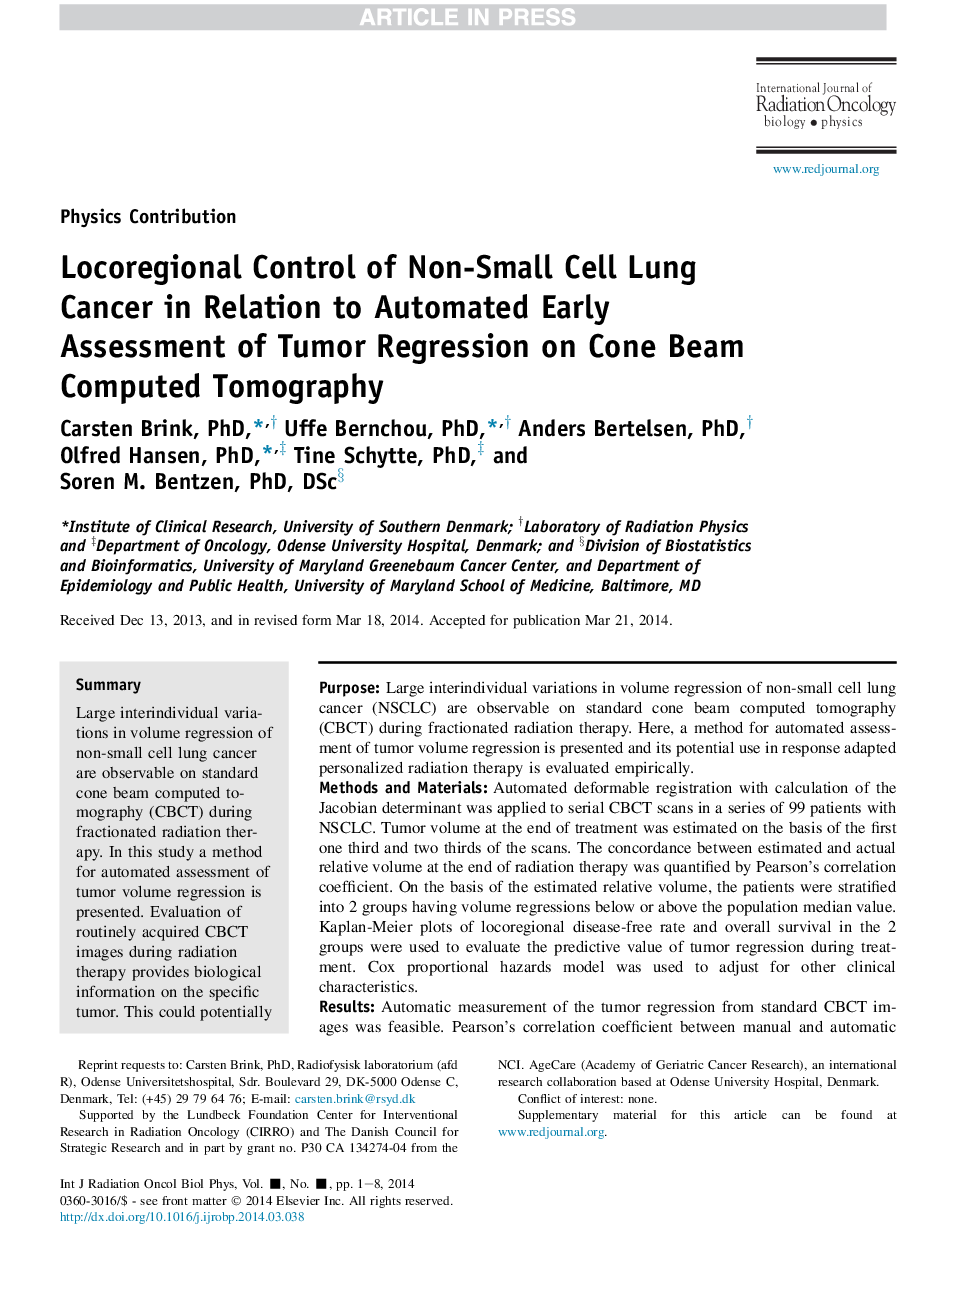 کنترل موضعی منطقه ای سرطان ریه های غیر سلولی در ارتباط با ارزیابی اولیه ارزیابی خودکار رگرسیون توموری بر روی توموگرافی کامپیوتری پرتوهای مخروطی 